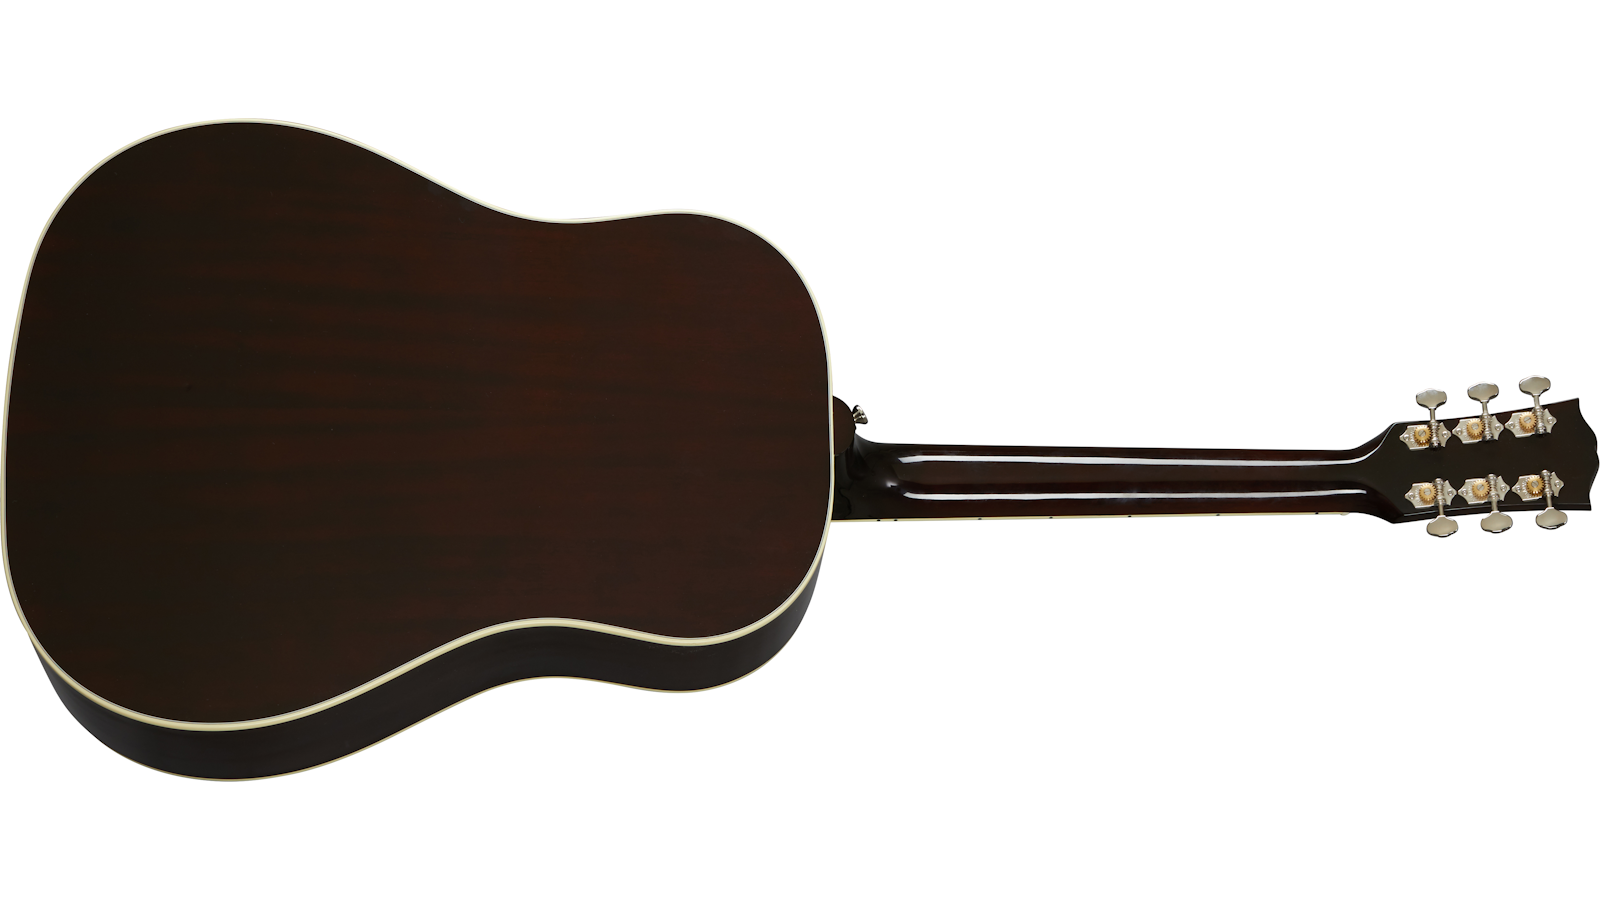 Gibson Southern Jumbo Original Dreanought Epicea Acajou Rw - Vintage Sunburst - Guitarra electro acustica - Variation 1